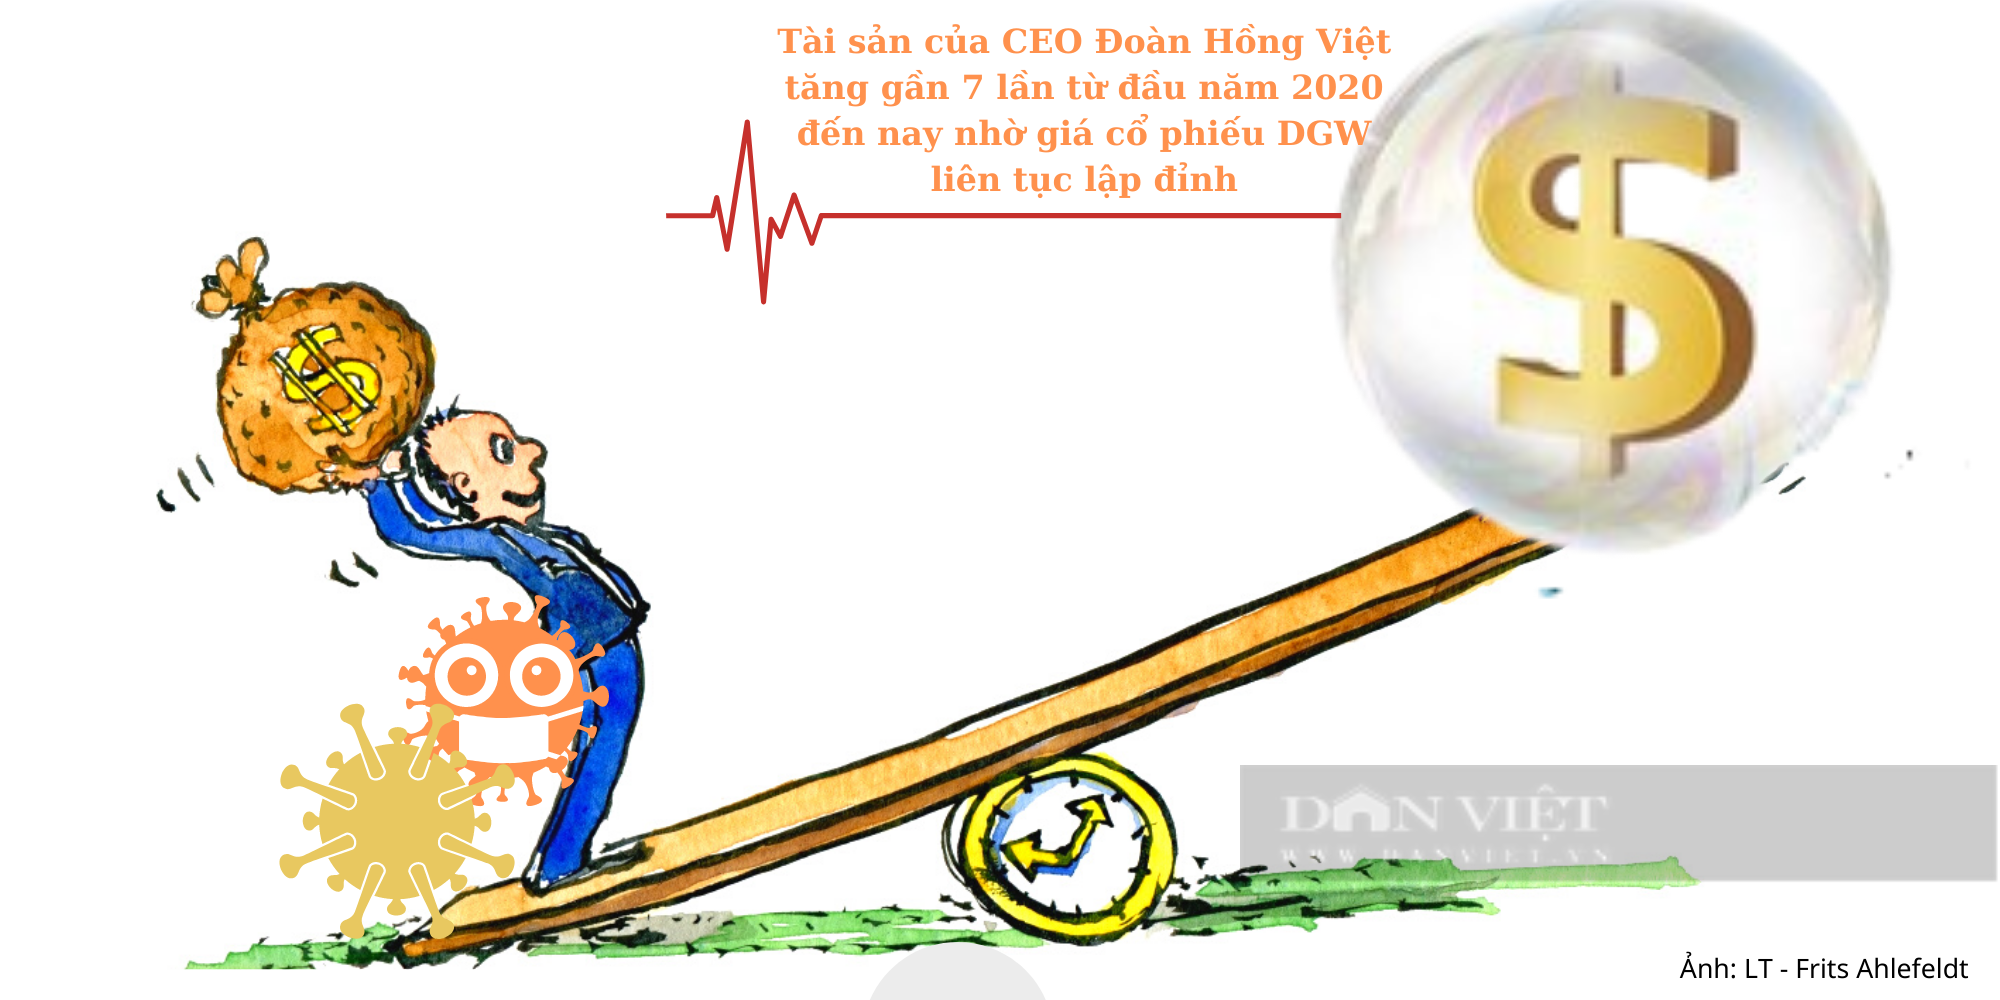 [HỒ SƠ DOANH NGHIỆP]: CEO Đoàn Hồng Việt và hành trình xây dựng đế chế Digiworld - Ảnh 7.